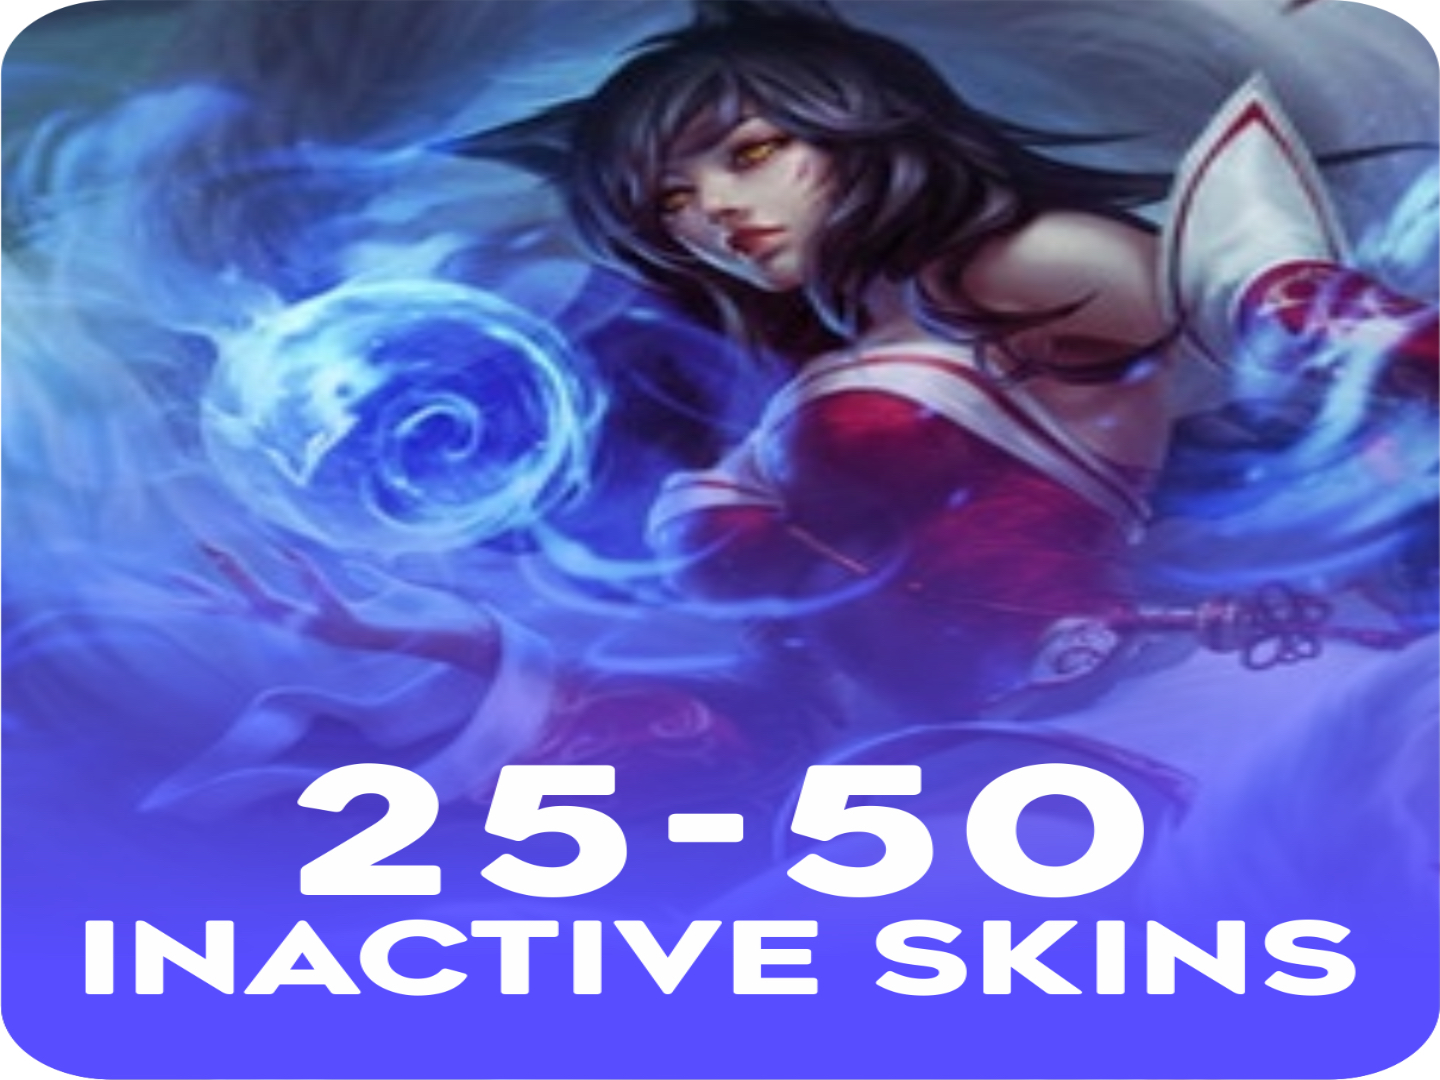 Inactive 25-50 skins Account